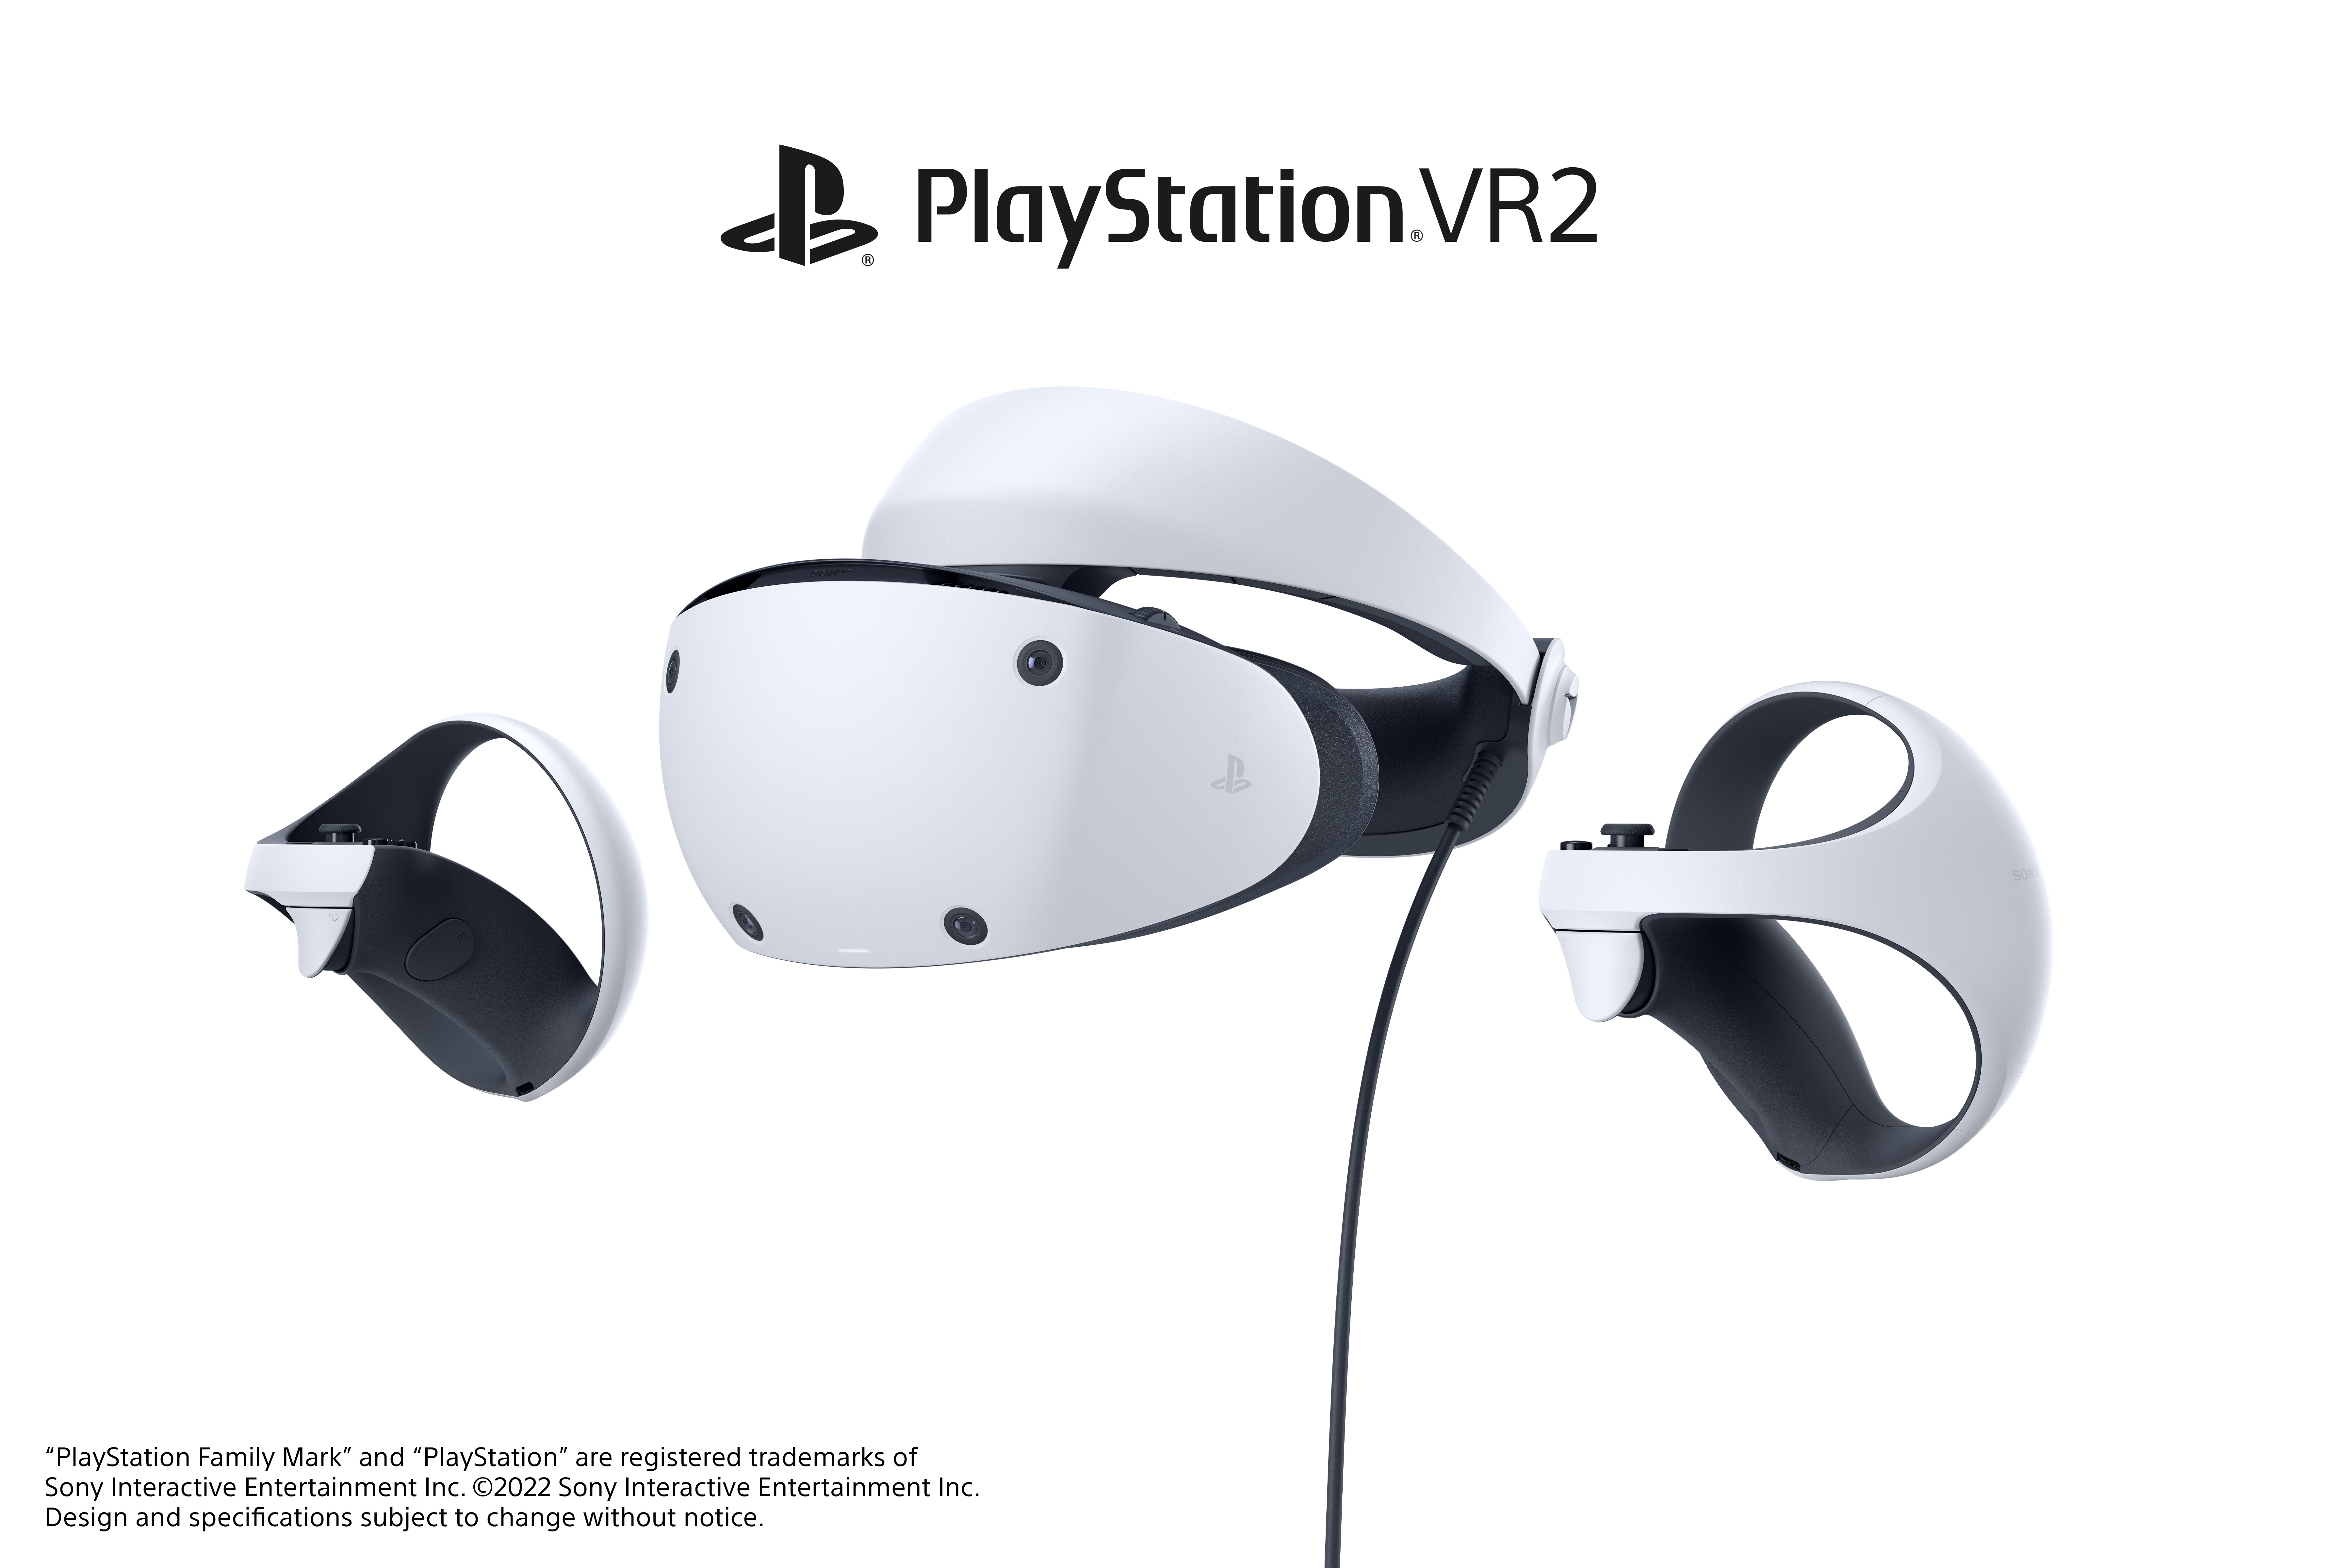 PS5 新一代VR 裝置「PlayStation VR2」確定將於2023 年初上市- 巴哈姆特